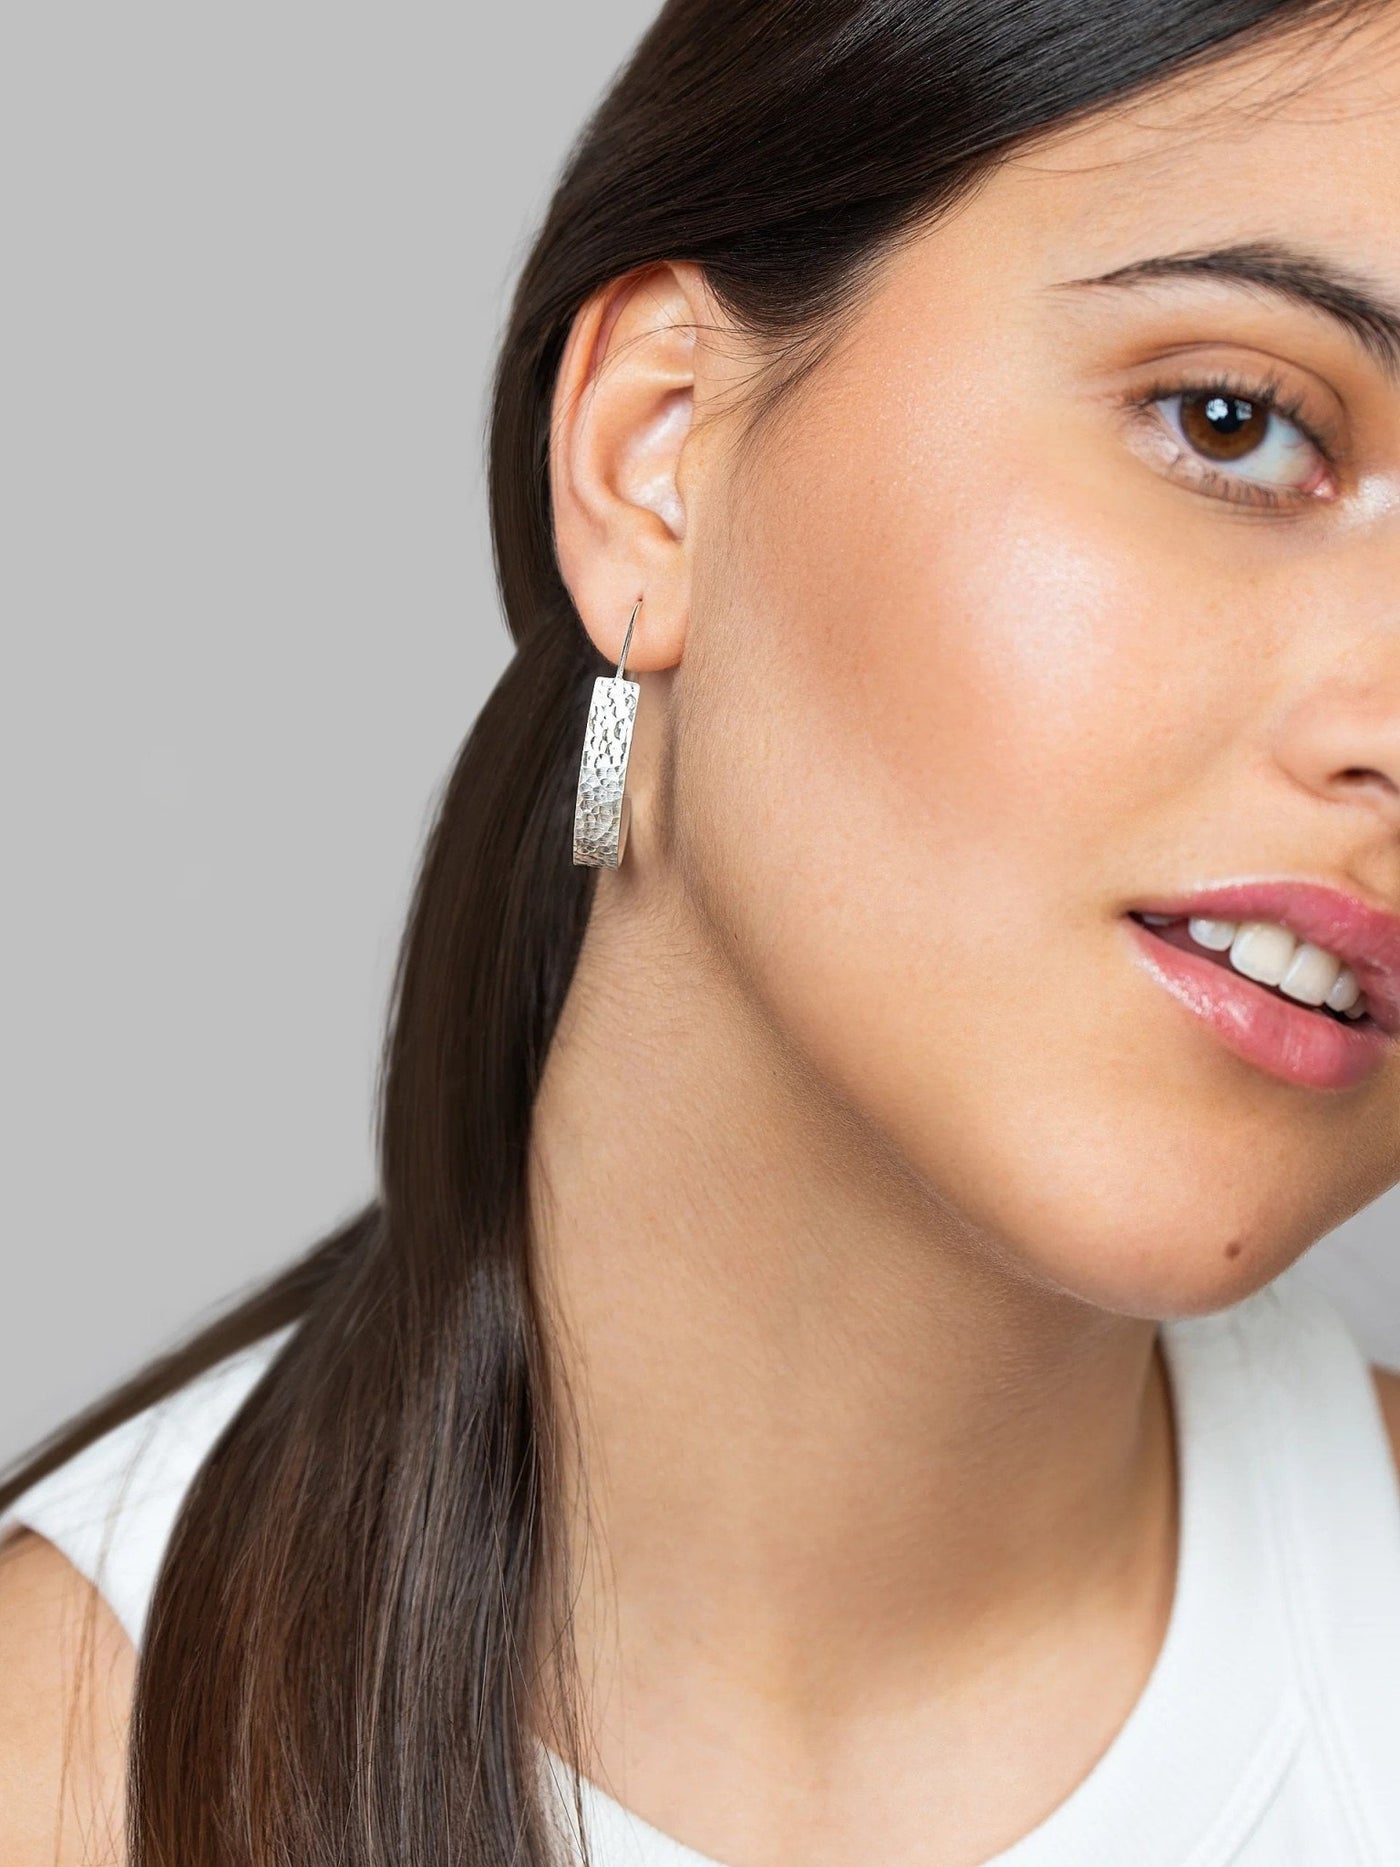 Here Silver Hoop Earrings - 925 Silver Mattebest selling itemsBoho EarringsLunai Jewelry